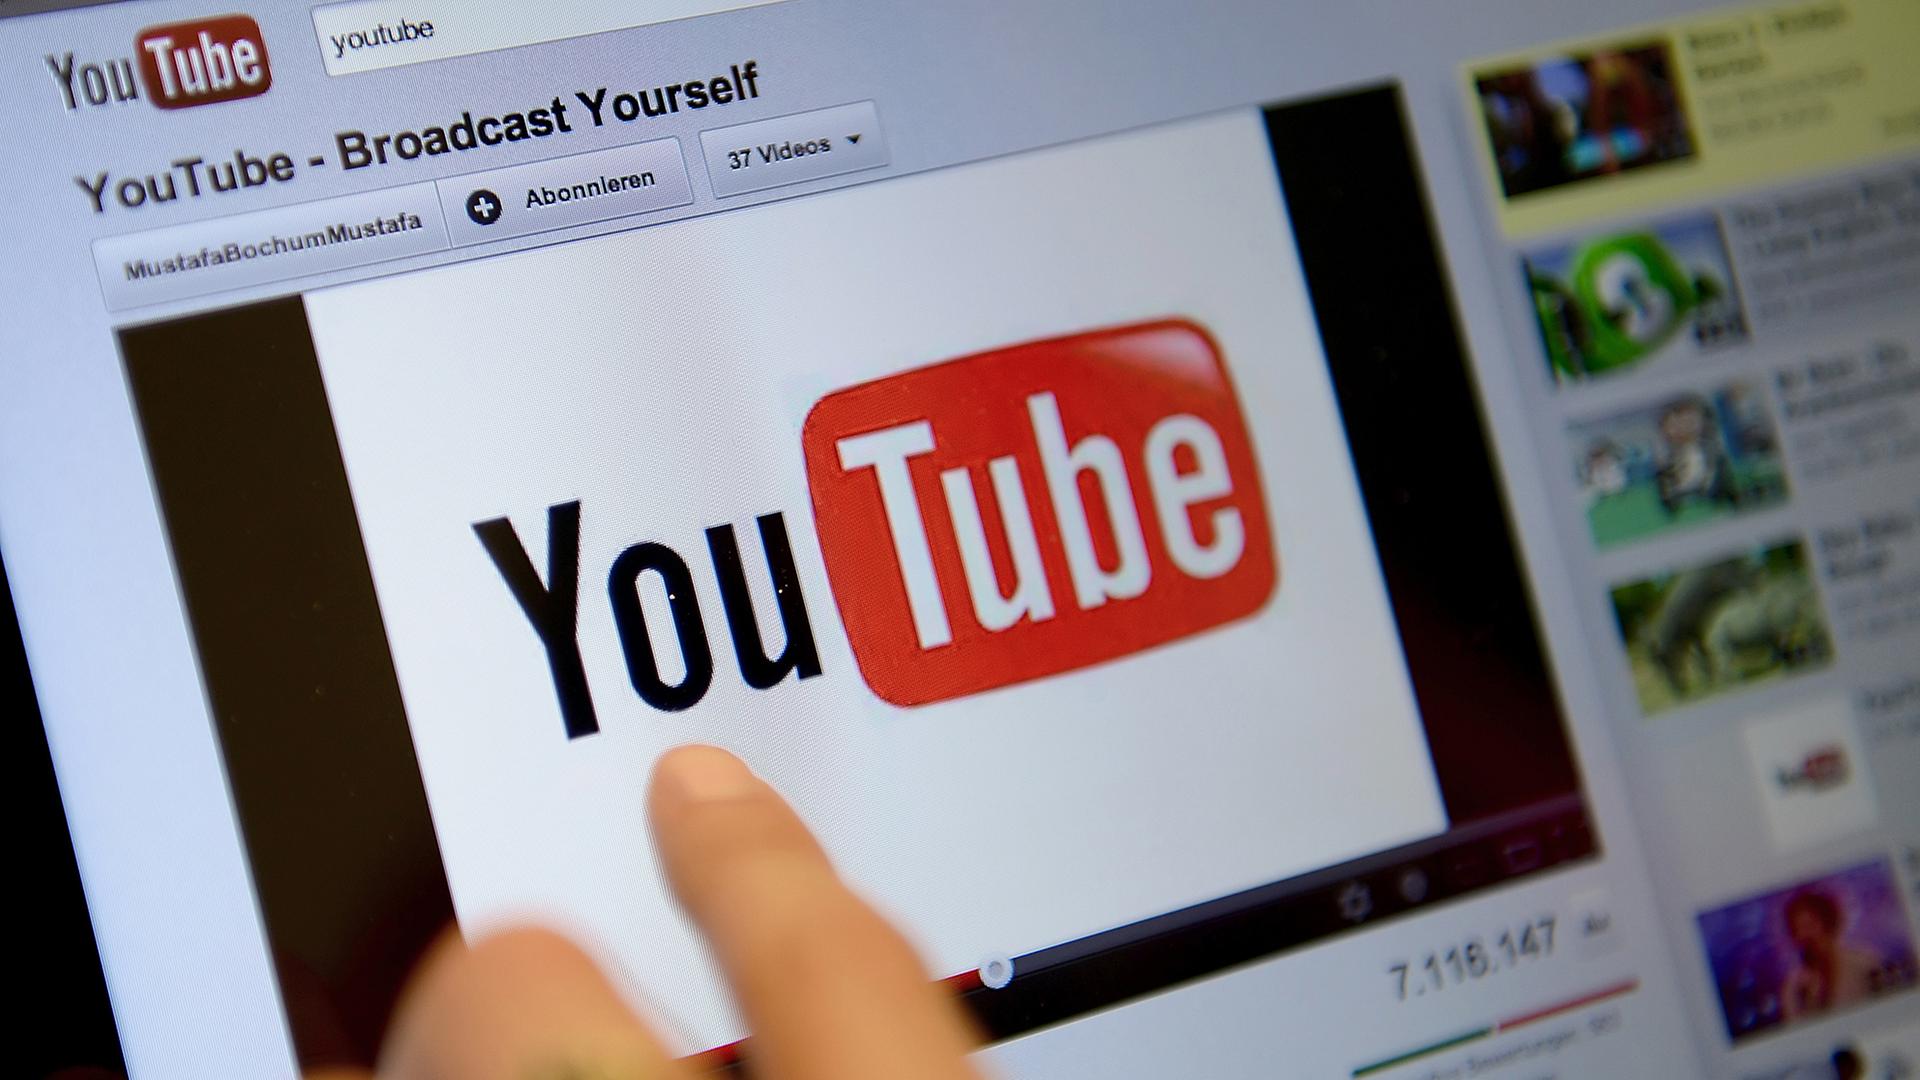 Ein Bildschirm mit dem Youtube-Logo und der Aufschrift "Broadcast Yourself"